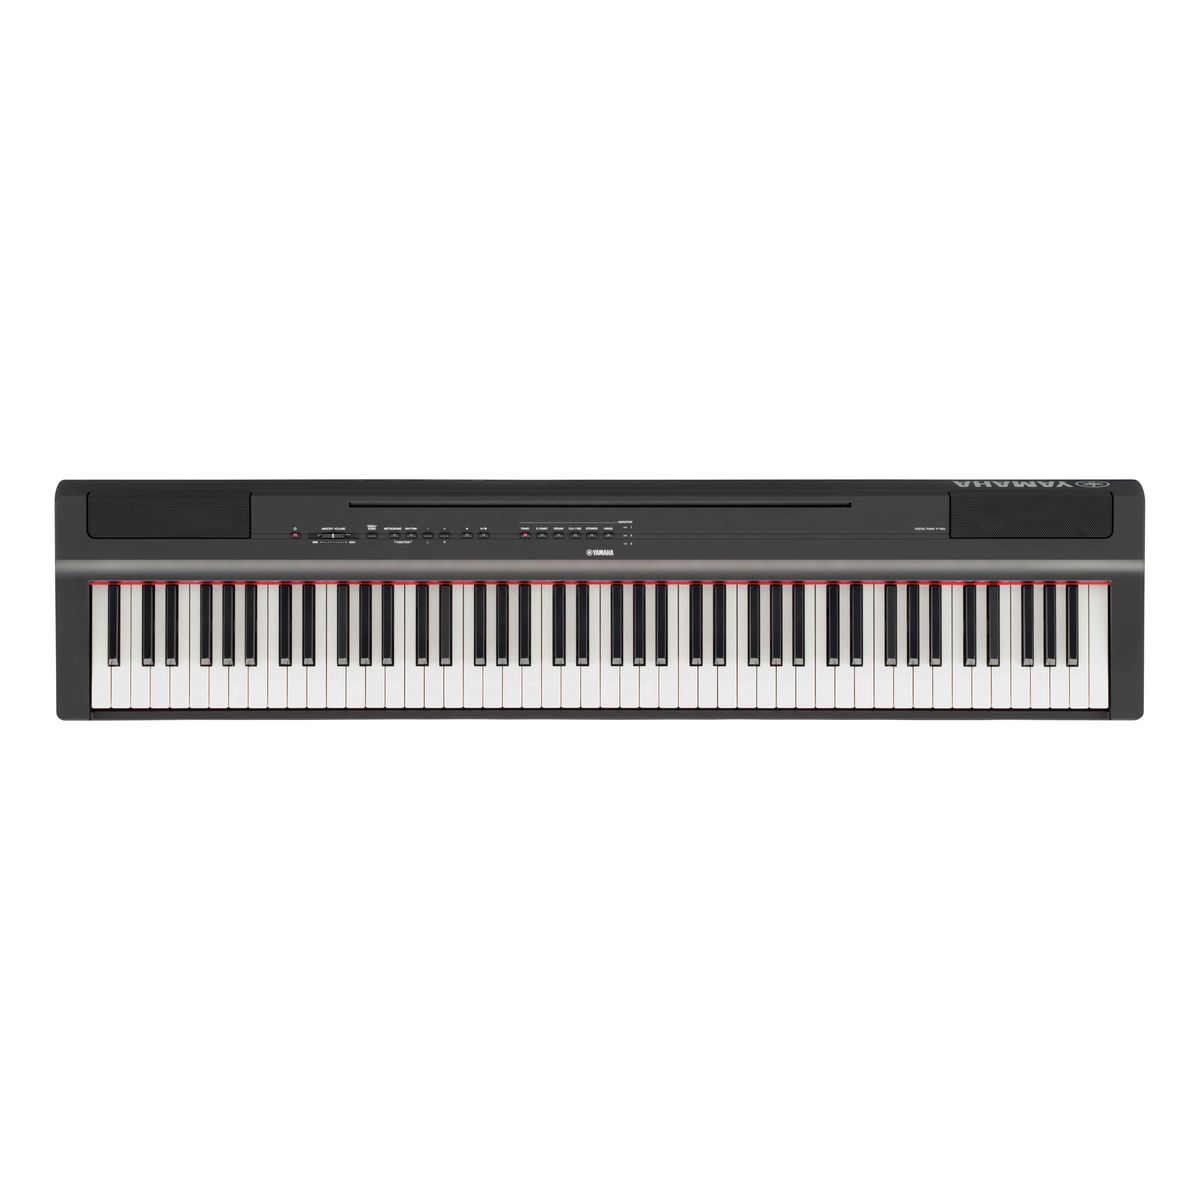 Цифровые пианино Yamaha P-125aB 88 клавишное клавишное пианино портативное цифровое пианино с жк дисплеем